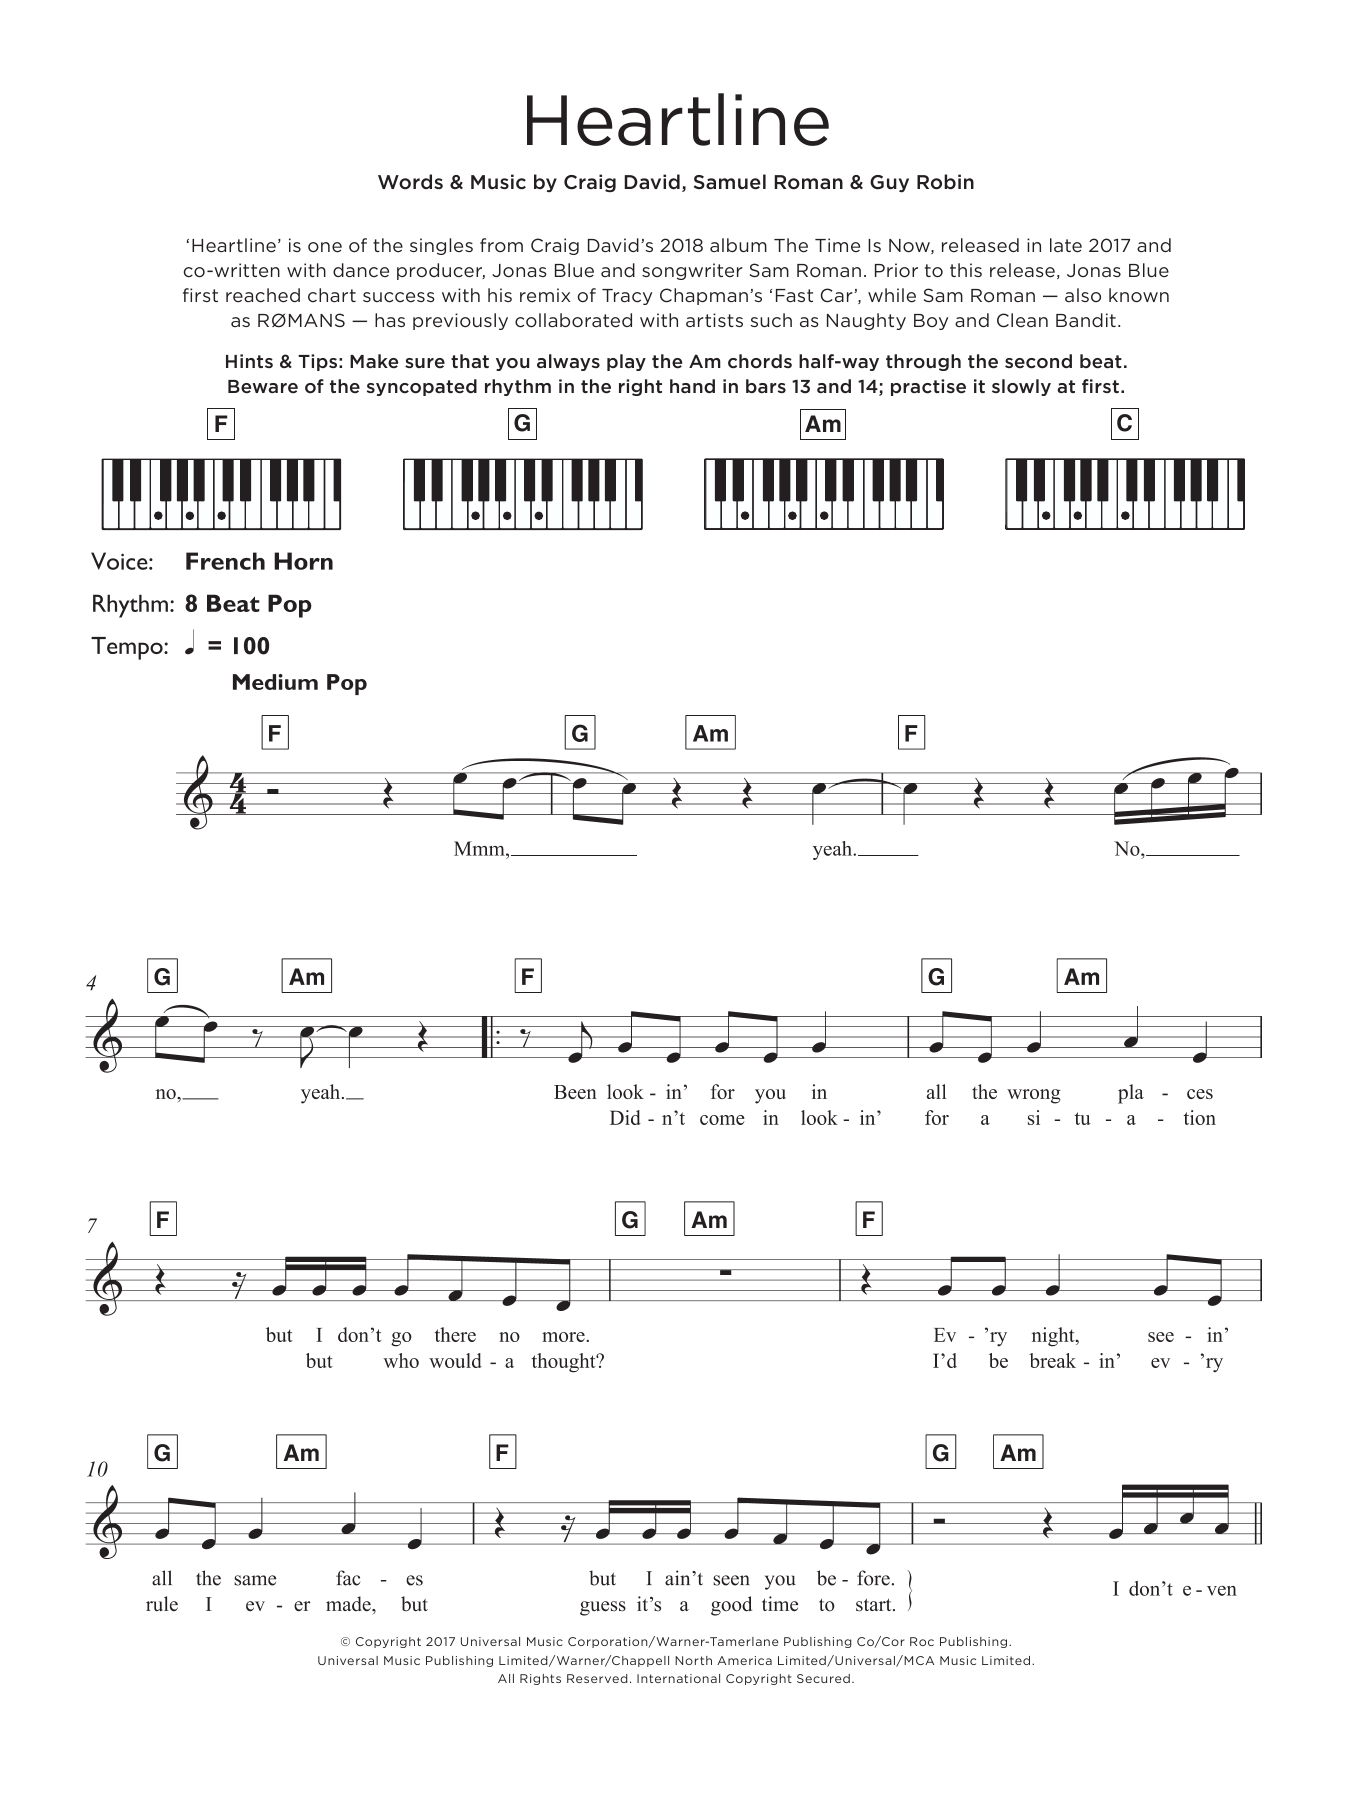 Craig David Heartline Sheet Music Notes & Chords for Ukulele - Download or Print PDF